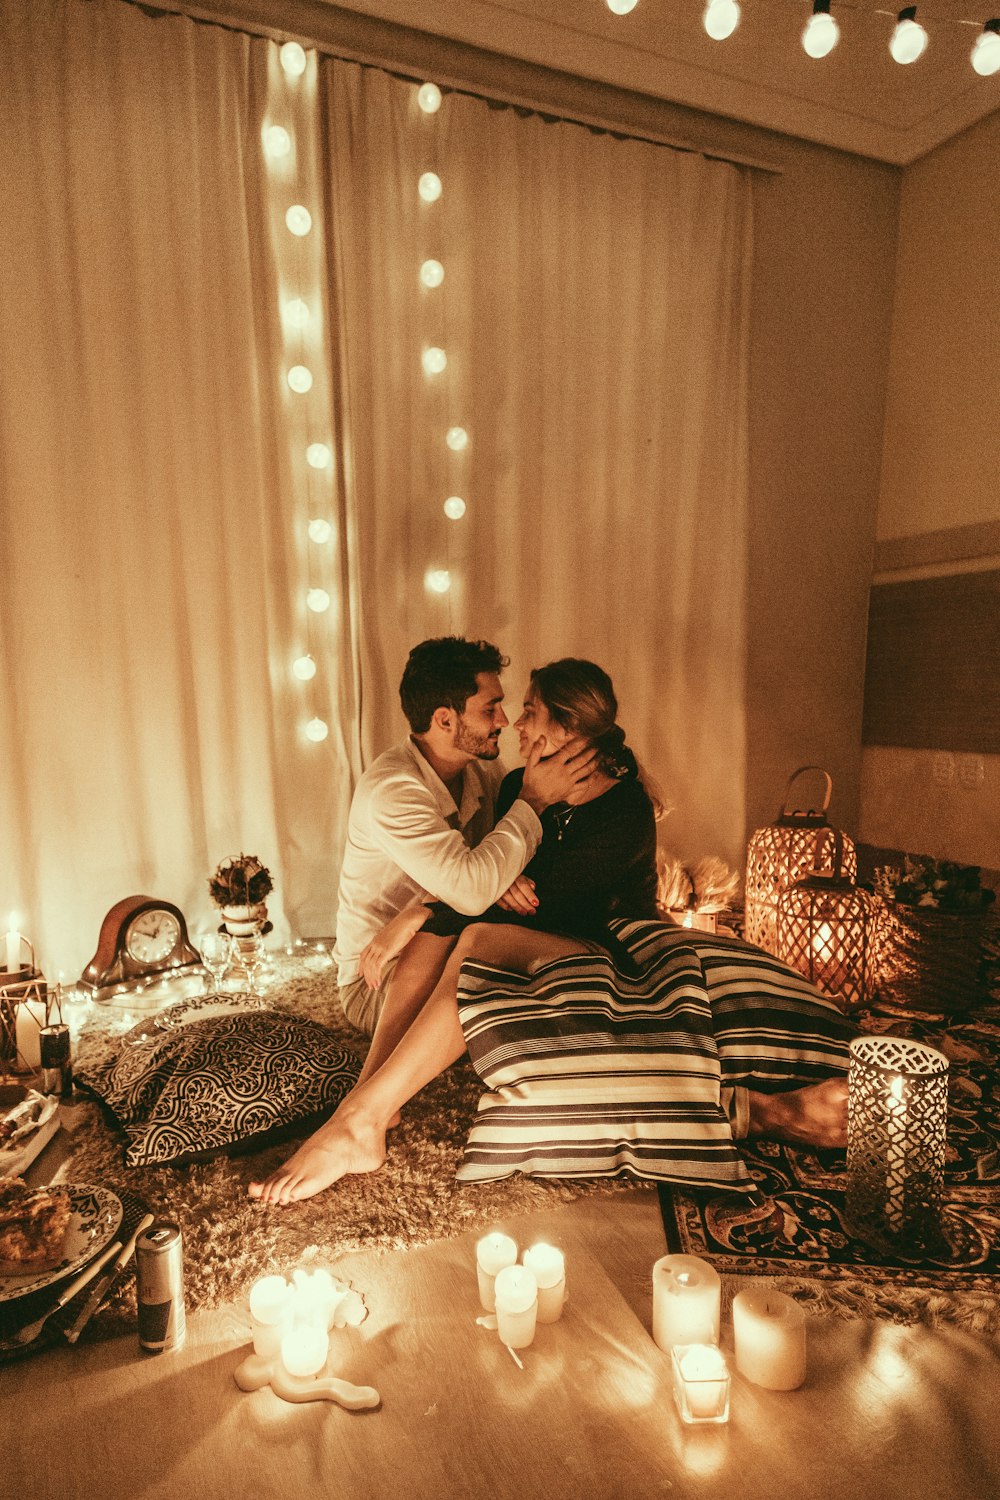 uomo e donna seduti sul pavimento e in procinto di baciarsi con candele accese all'interno della stanza